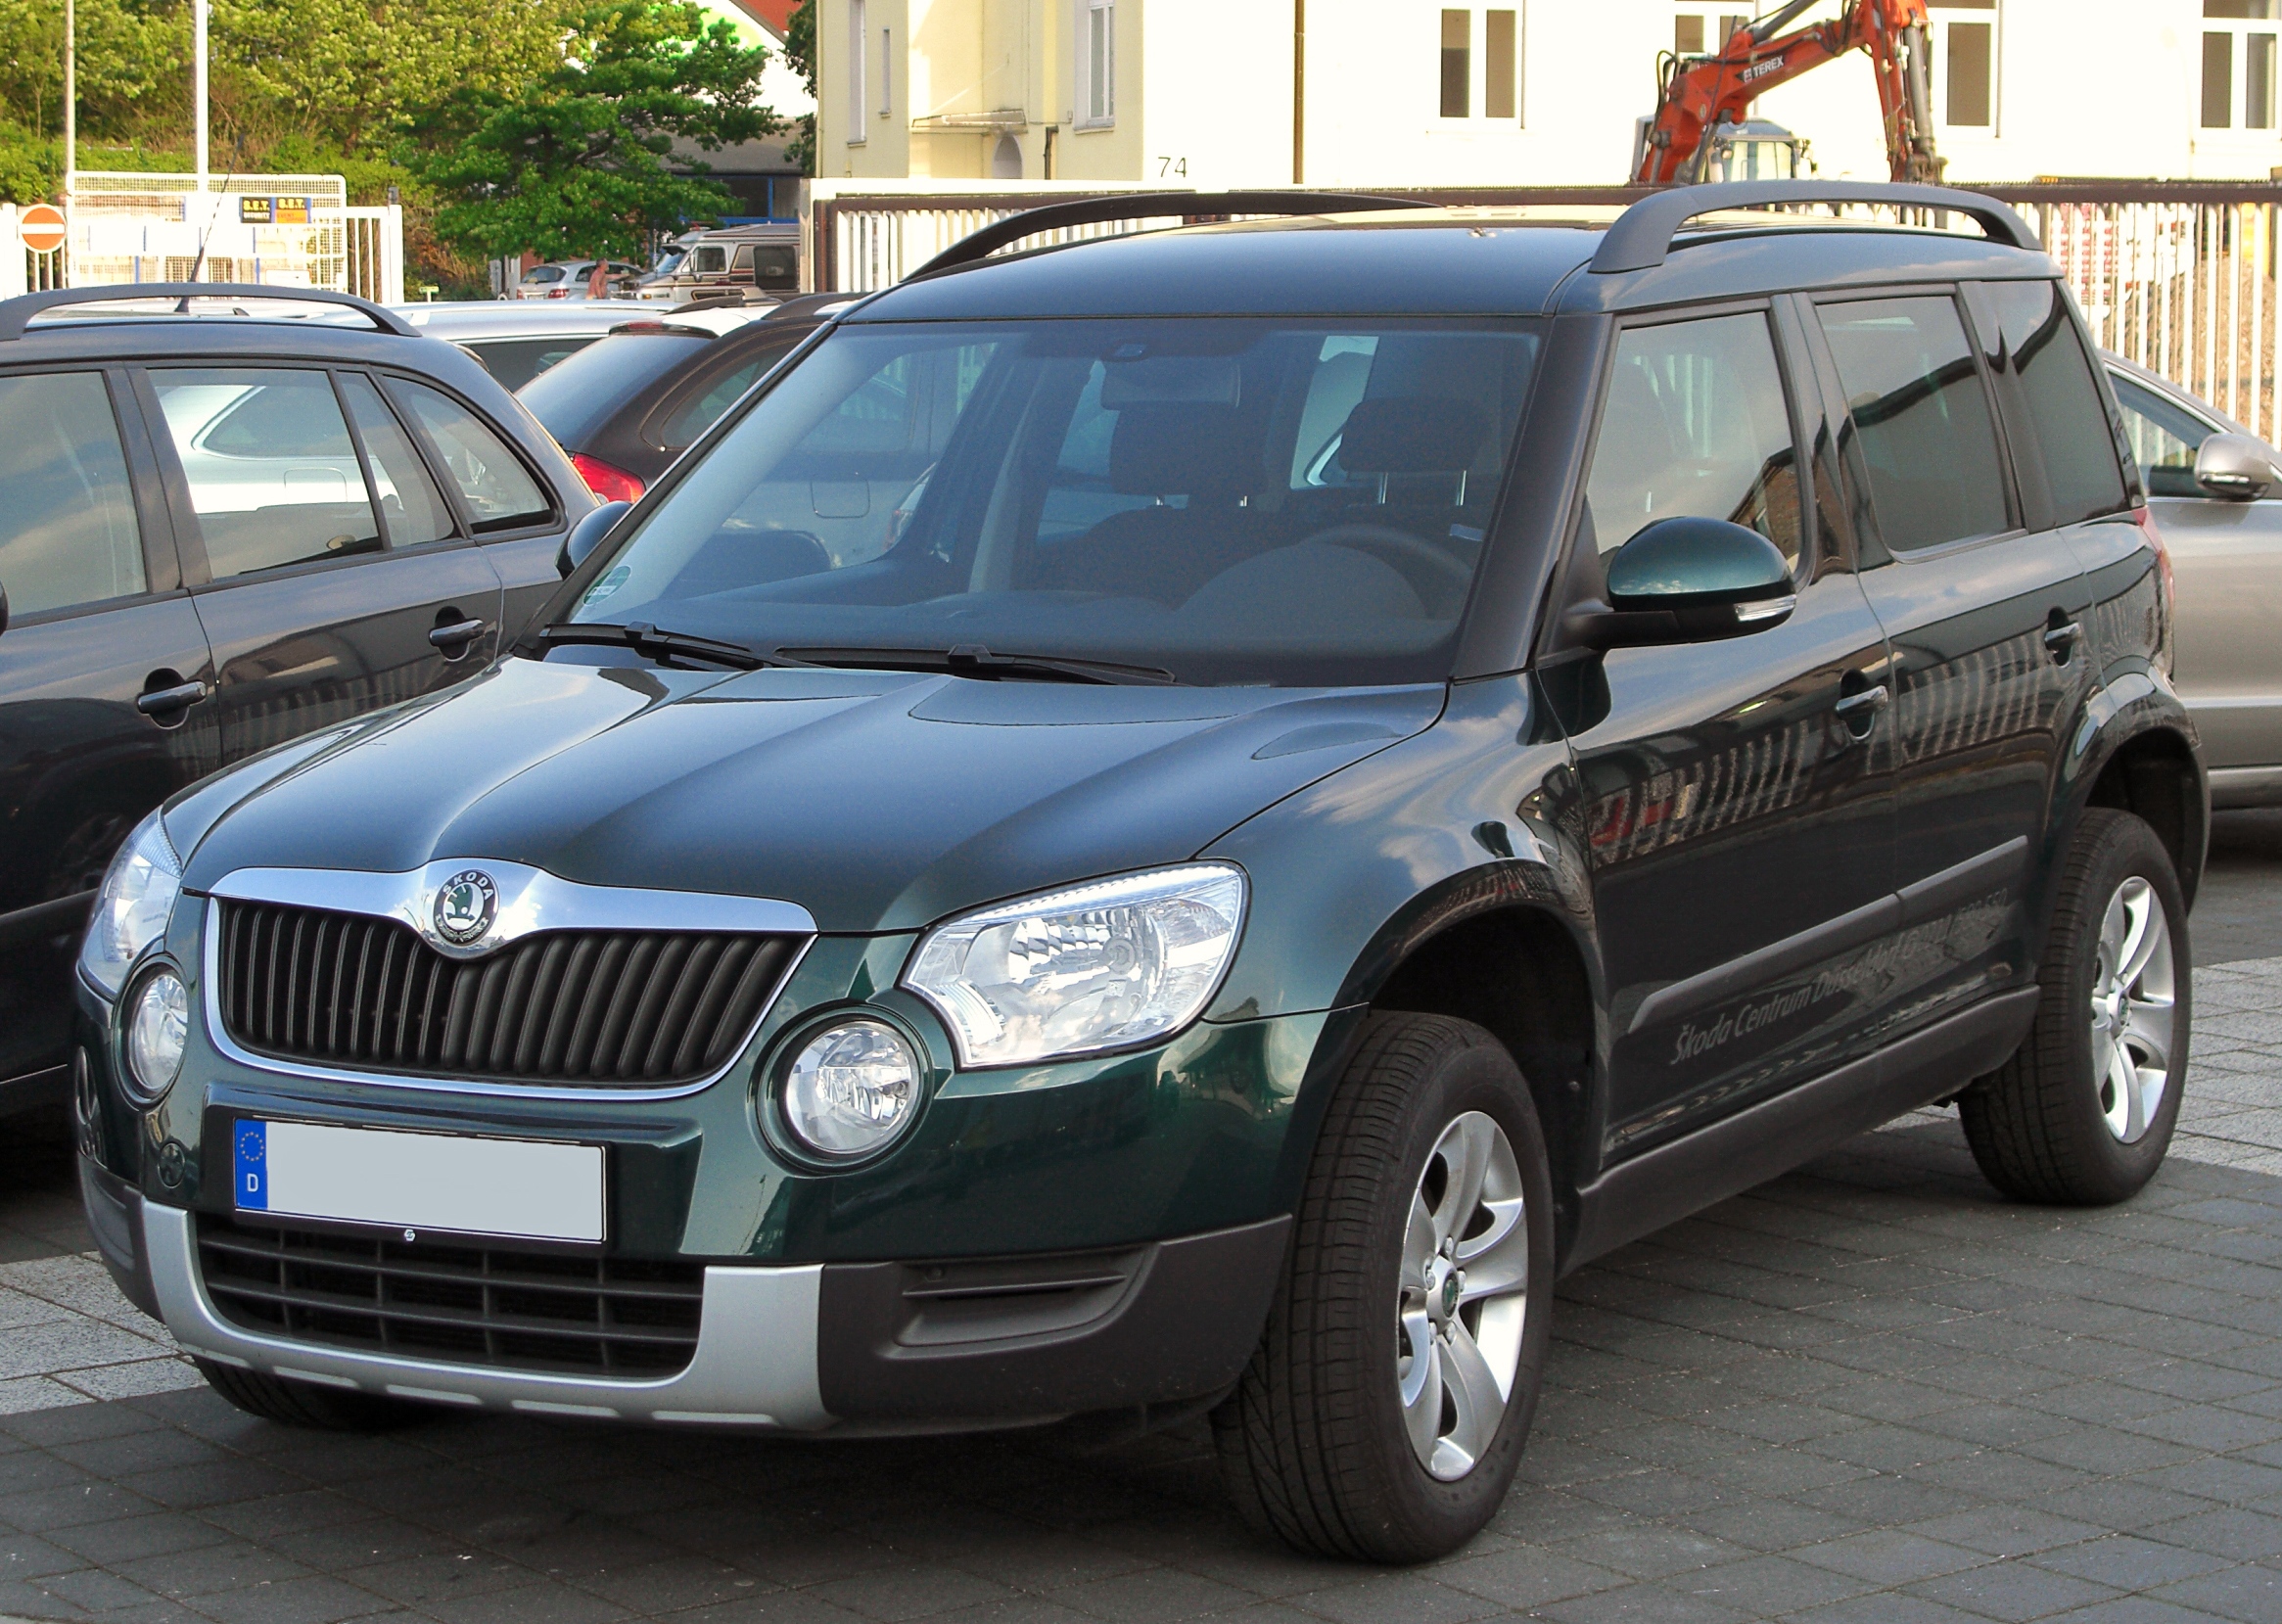 Немецкий суд обязал производителя выкупить у клиента дизельный Škoda Yeti